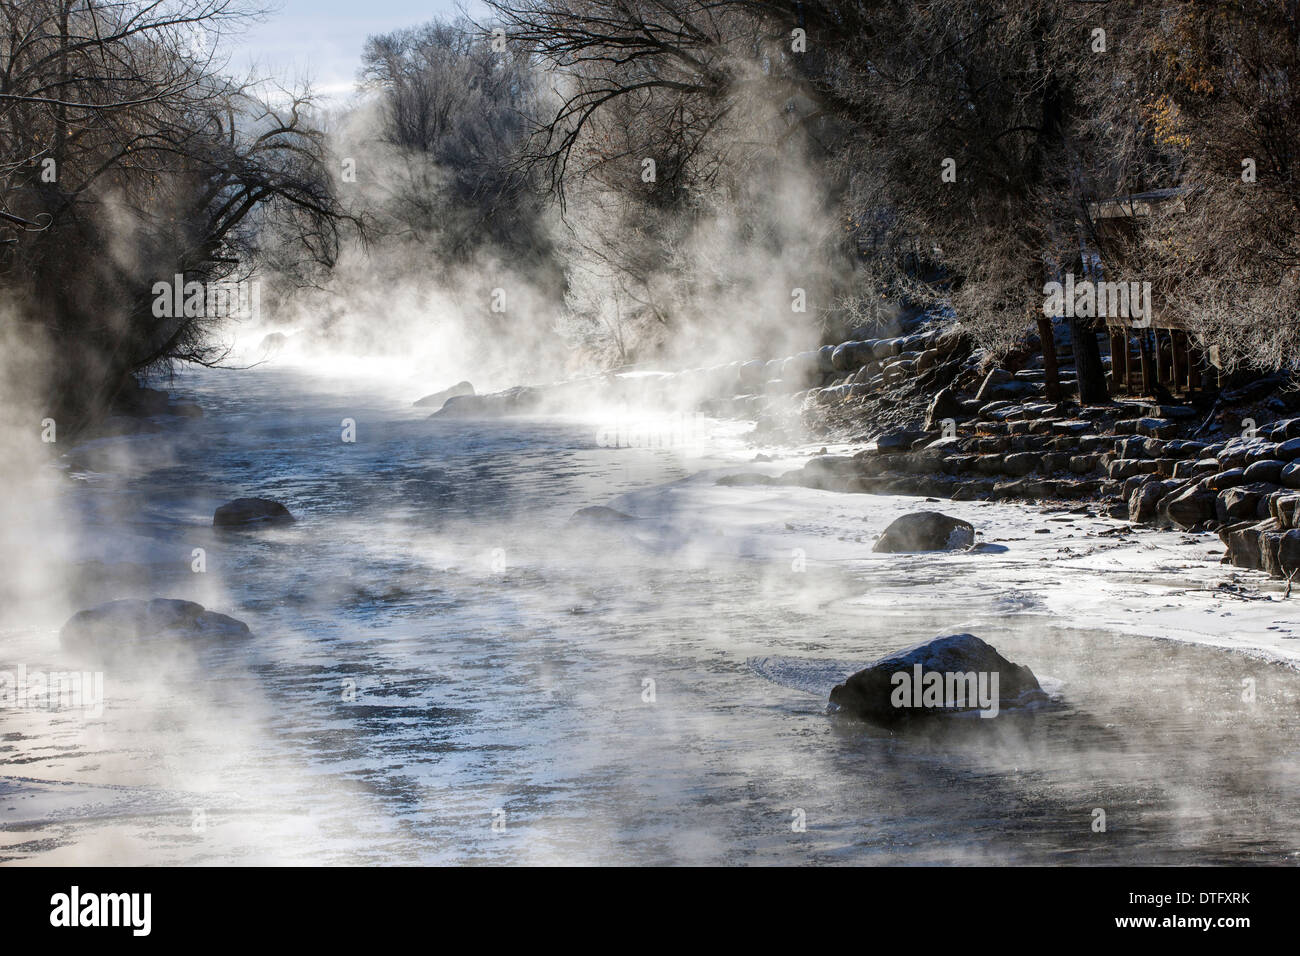 Vapore sorge su un sub-zero mattina dalla neve e ghiaccio soffocato Arkansas River, che corre attraverso la storica Salida, Colorado, STATI UNITI D'AMERICA Foto Stock